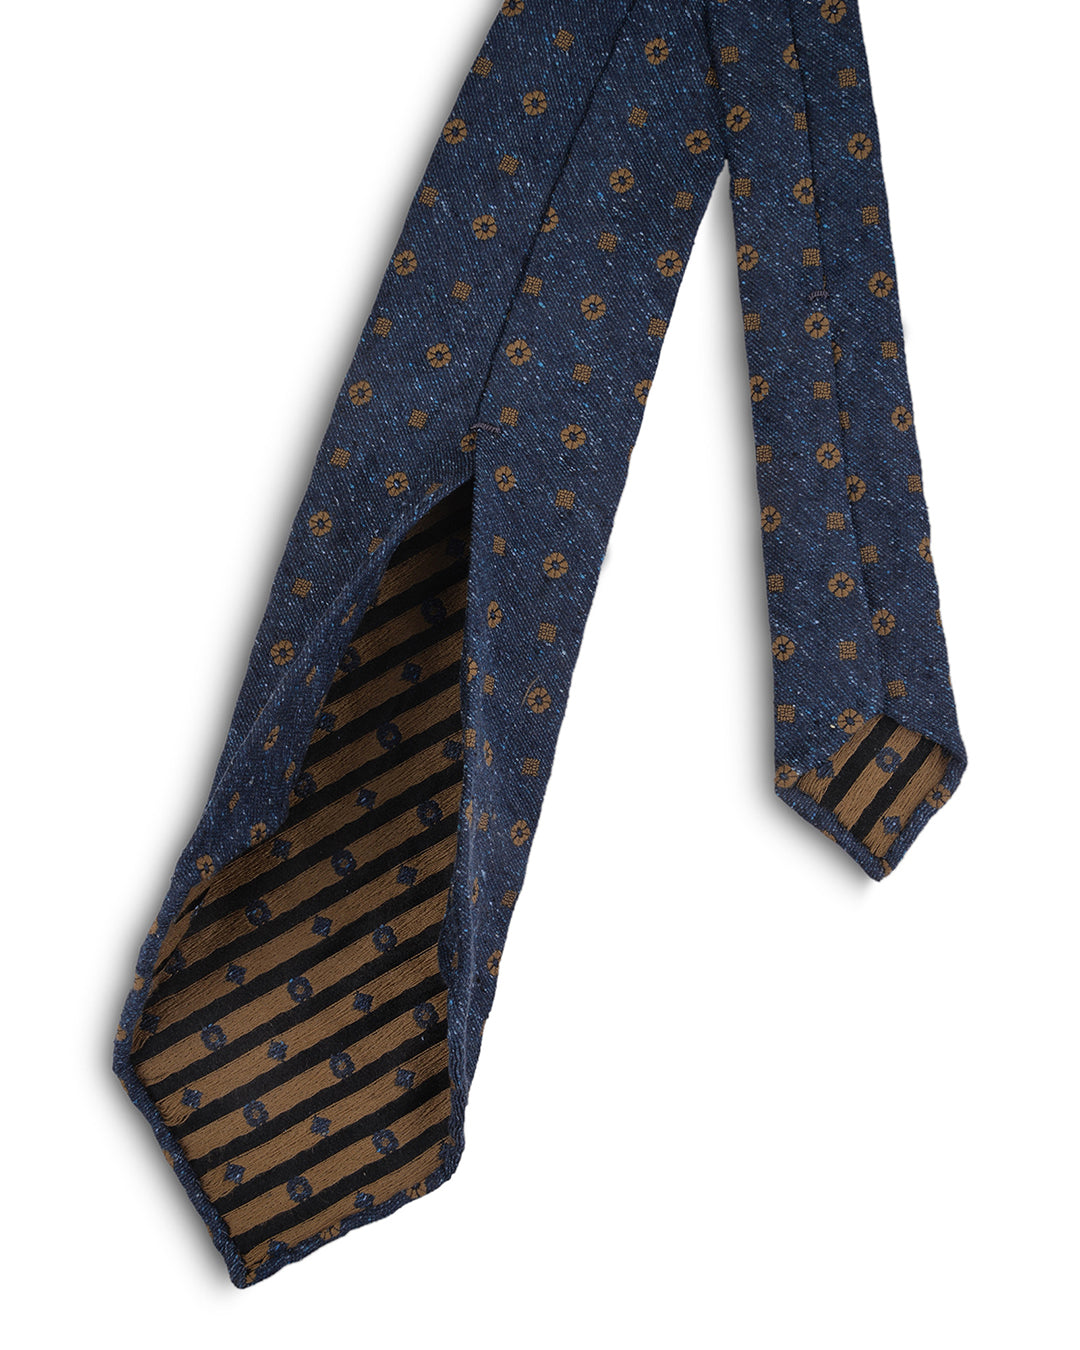 Bronze floral on Dark blue Tie